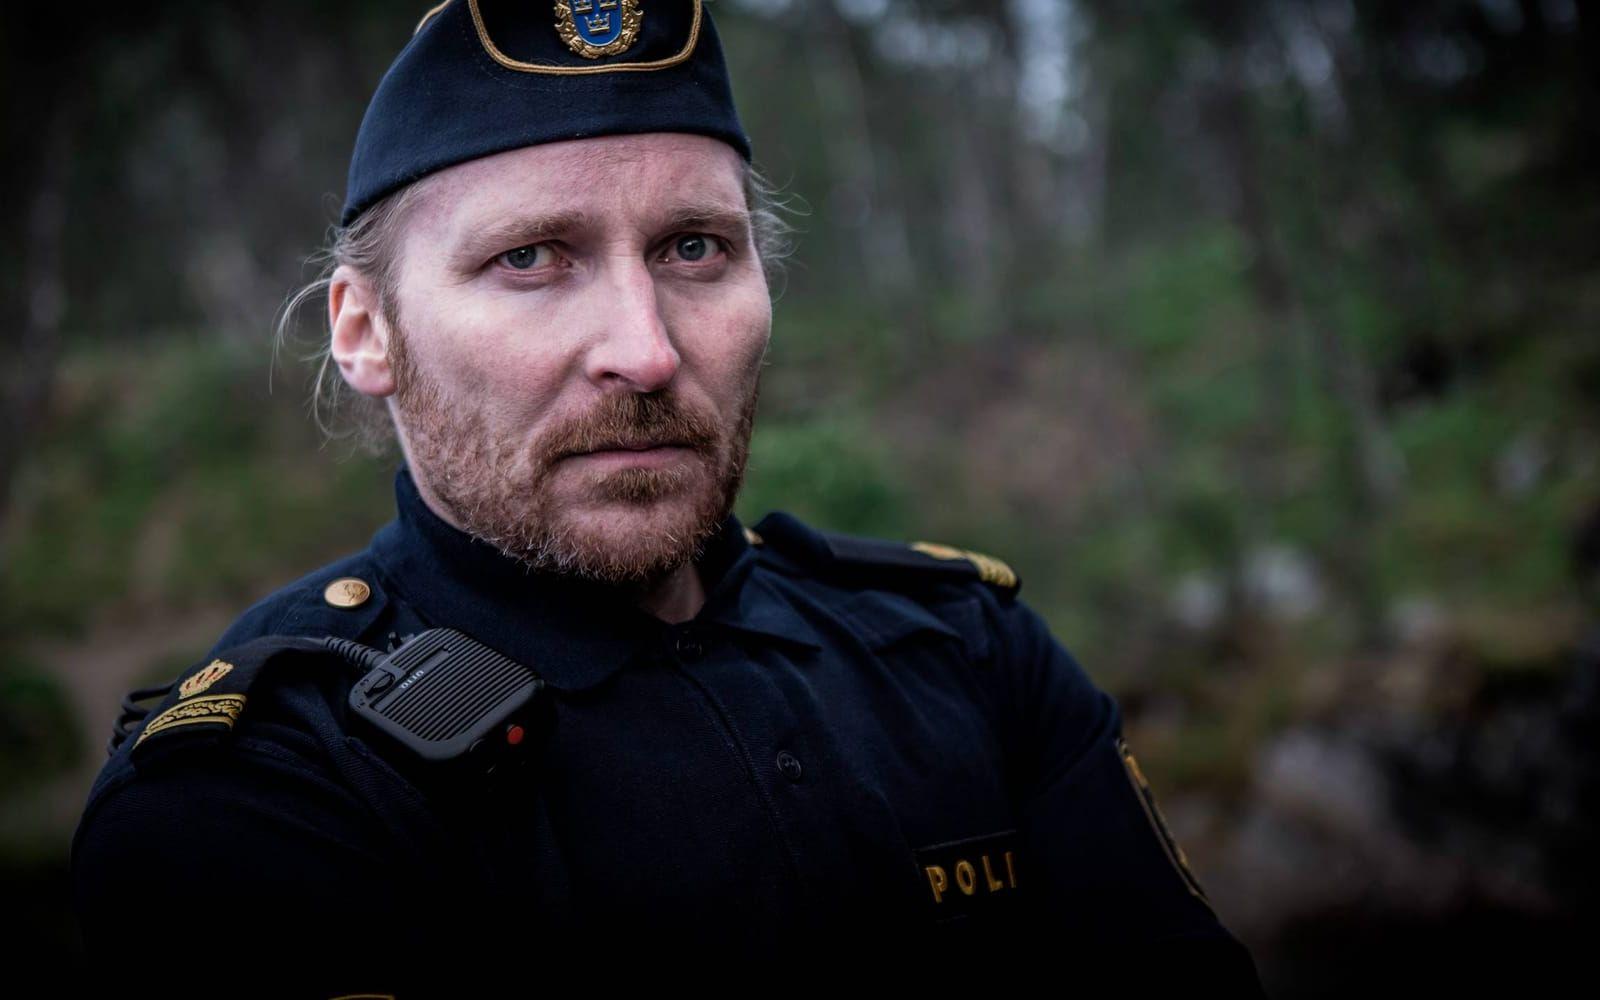 Polisen Thorndahl spelas väldigt bra av Jakob Hultcrantz Hansson. Bild: SVT.